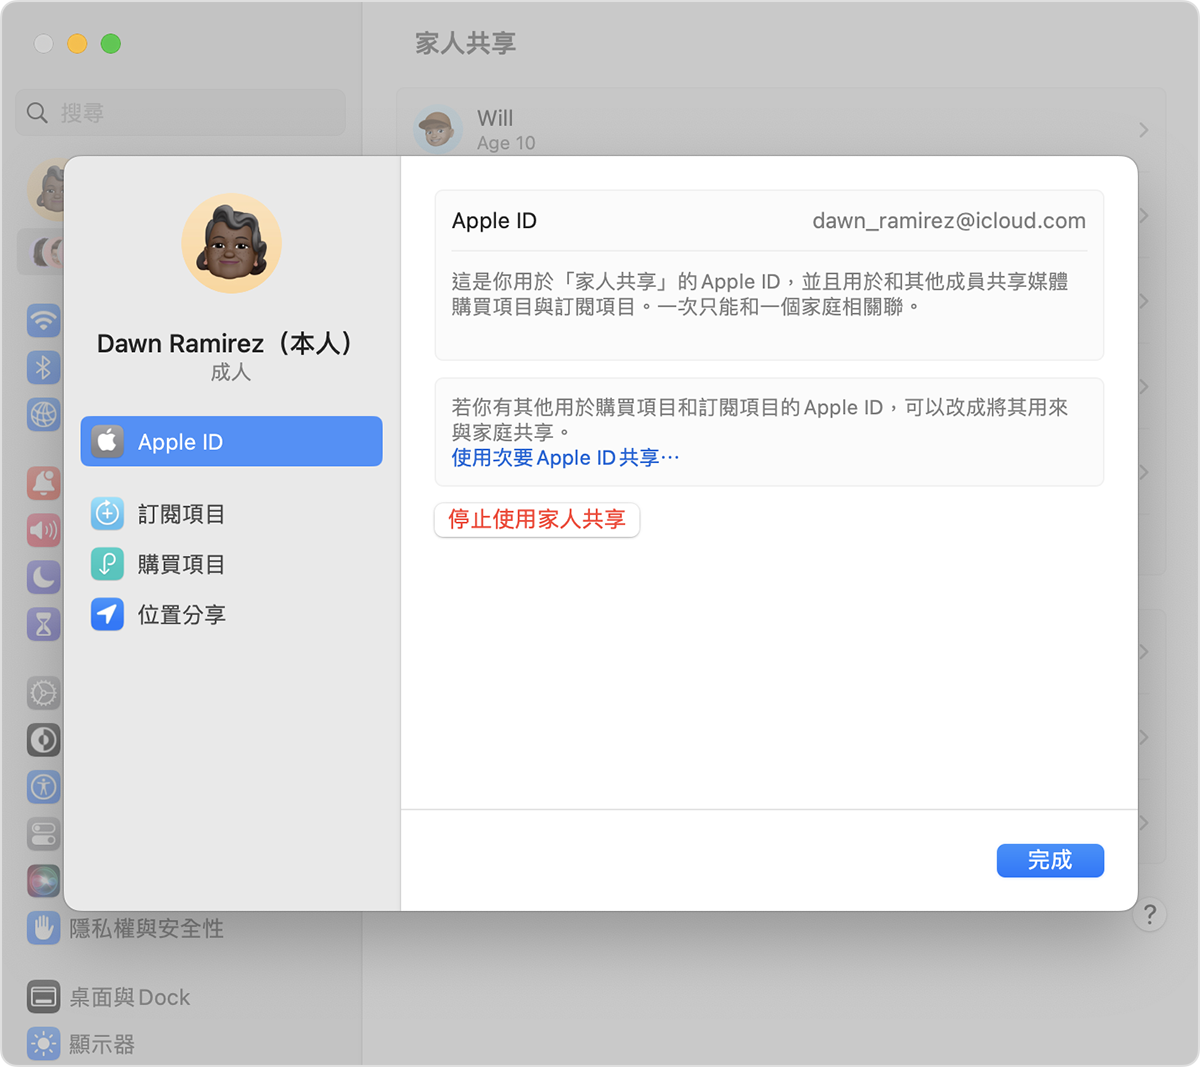 「使用次要 Apple ID 共享」為藍色文字。